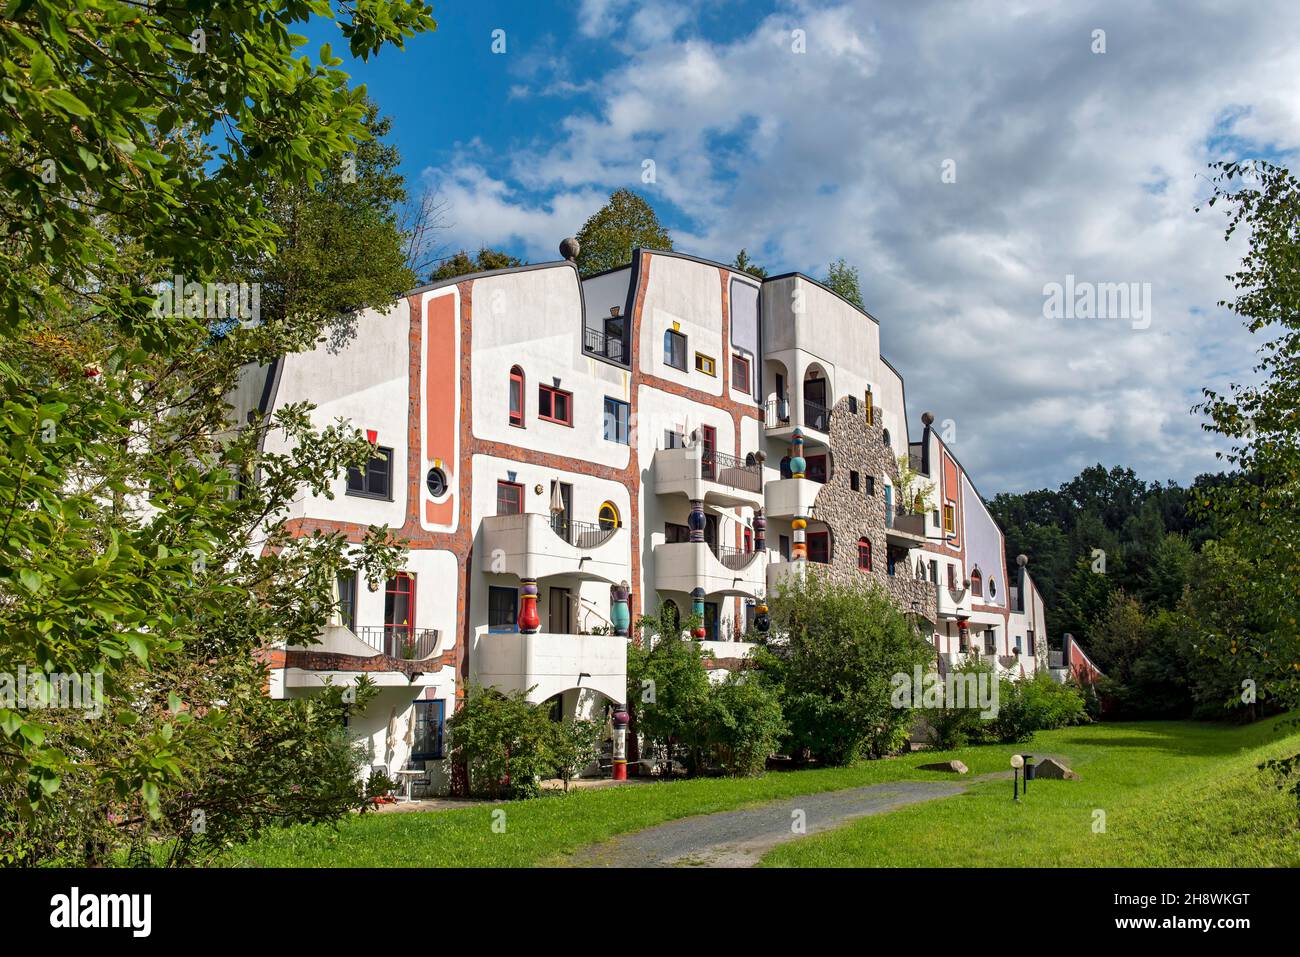 Steinhaus (Casa di pietra) edificio del Rogner Thermal Spa and Hotel progettato da Hundertwasser, Bad Blumau, Austria Foto Stock